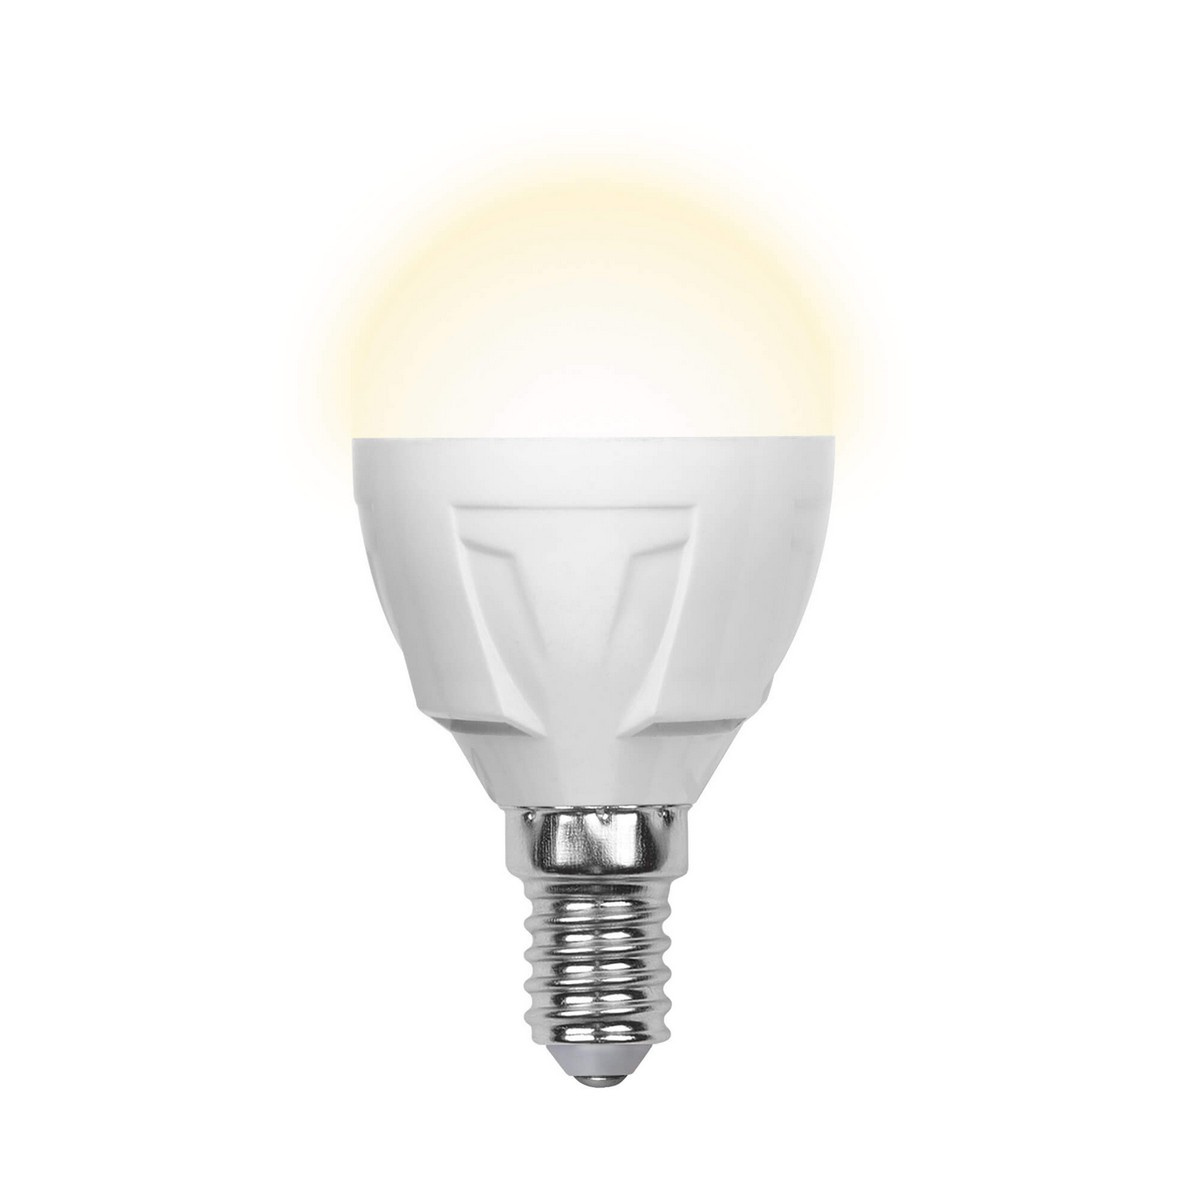 Лампа LED PREMIUM G45-6W-E14-N шар 3000K Включай